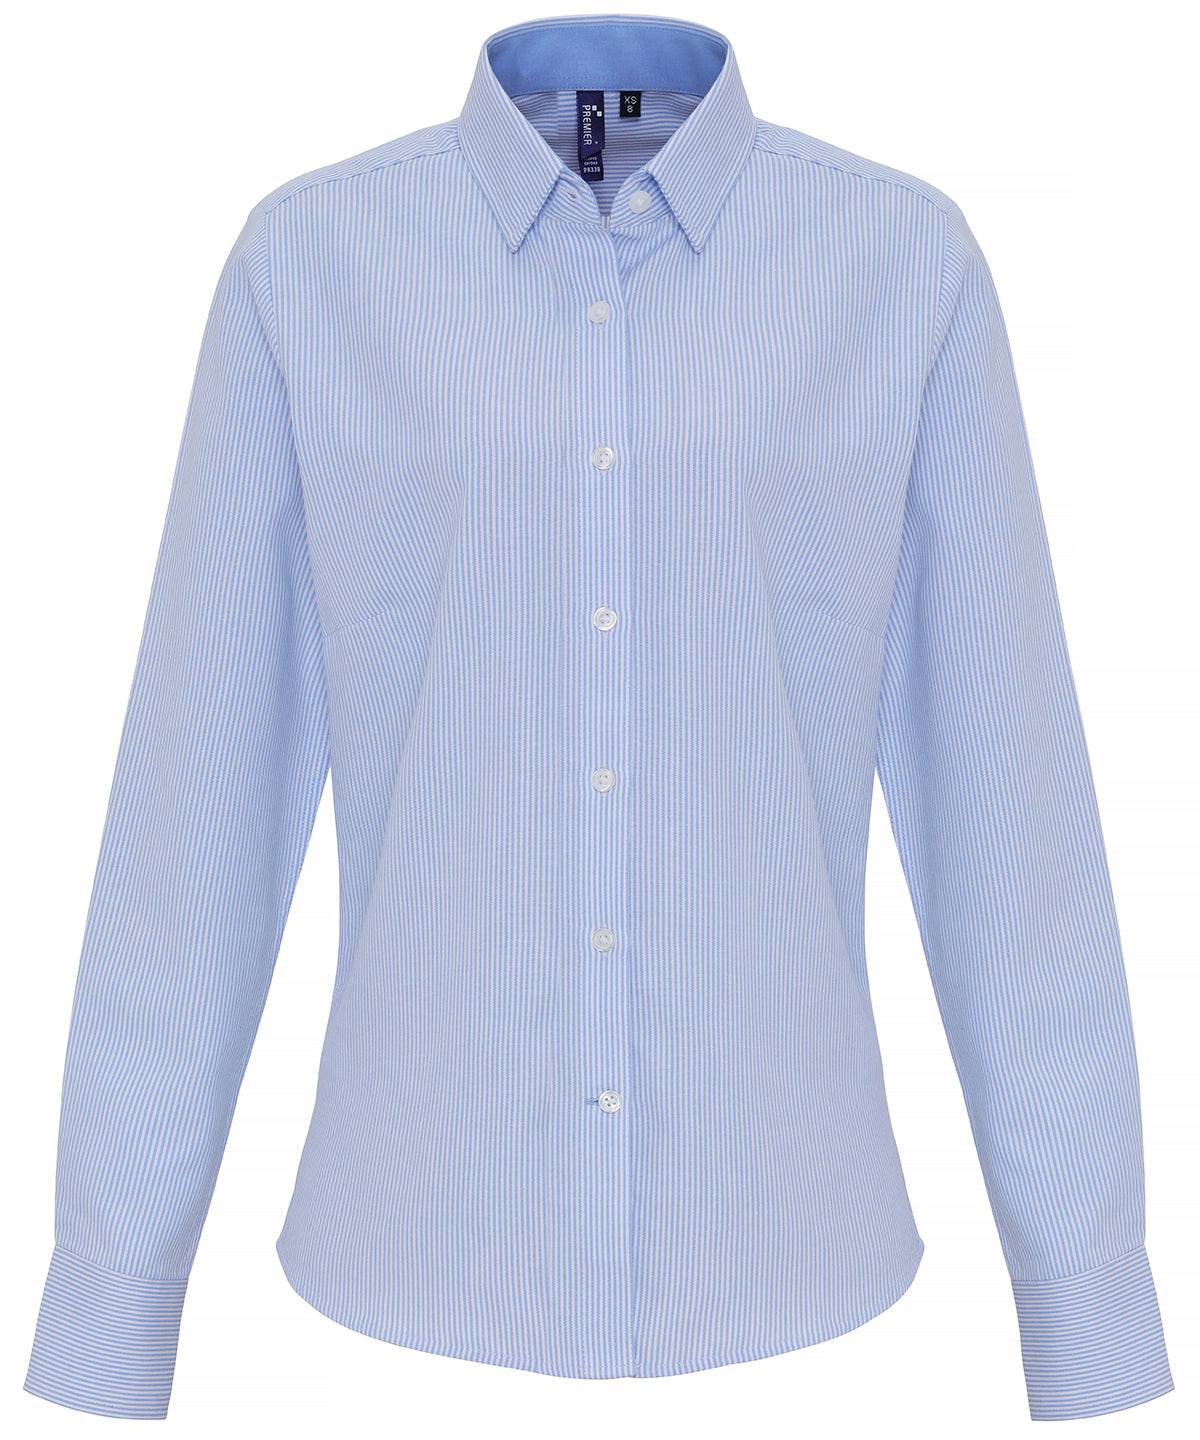 White/Light Blue - Women's cotton-rich Oxford stripes blouse